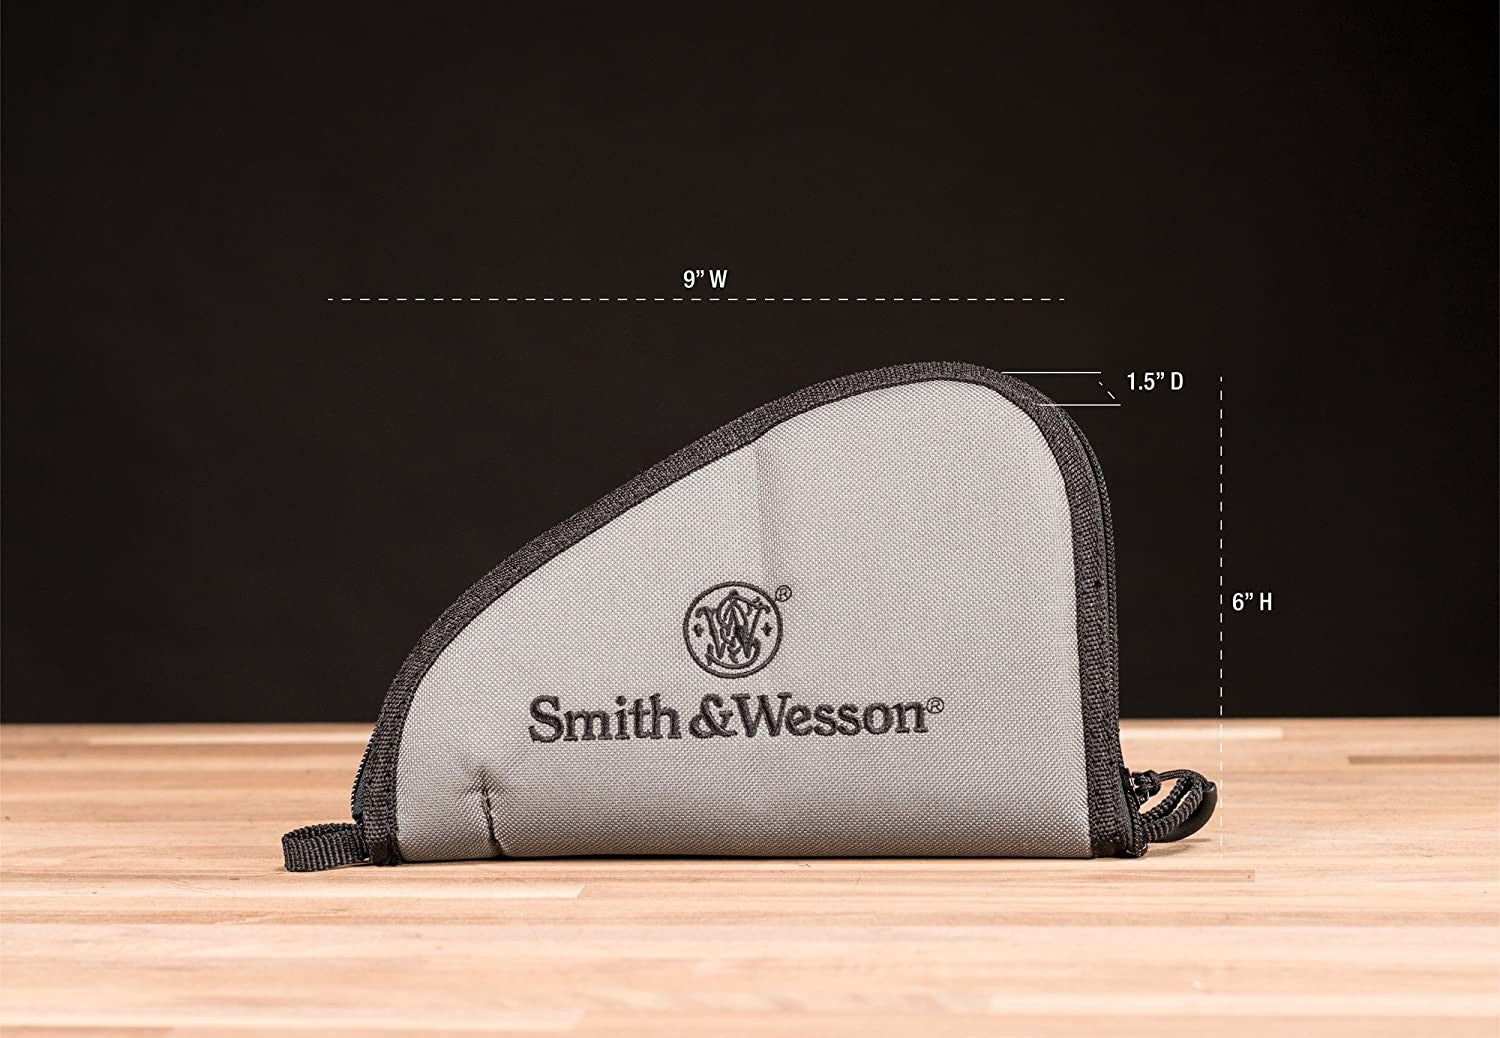 M&P Funda acolchada para pistola caza tiro deportes almacenamiento y transporte Pequeño by Smith & Wesson